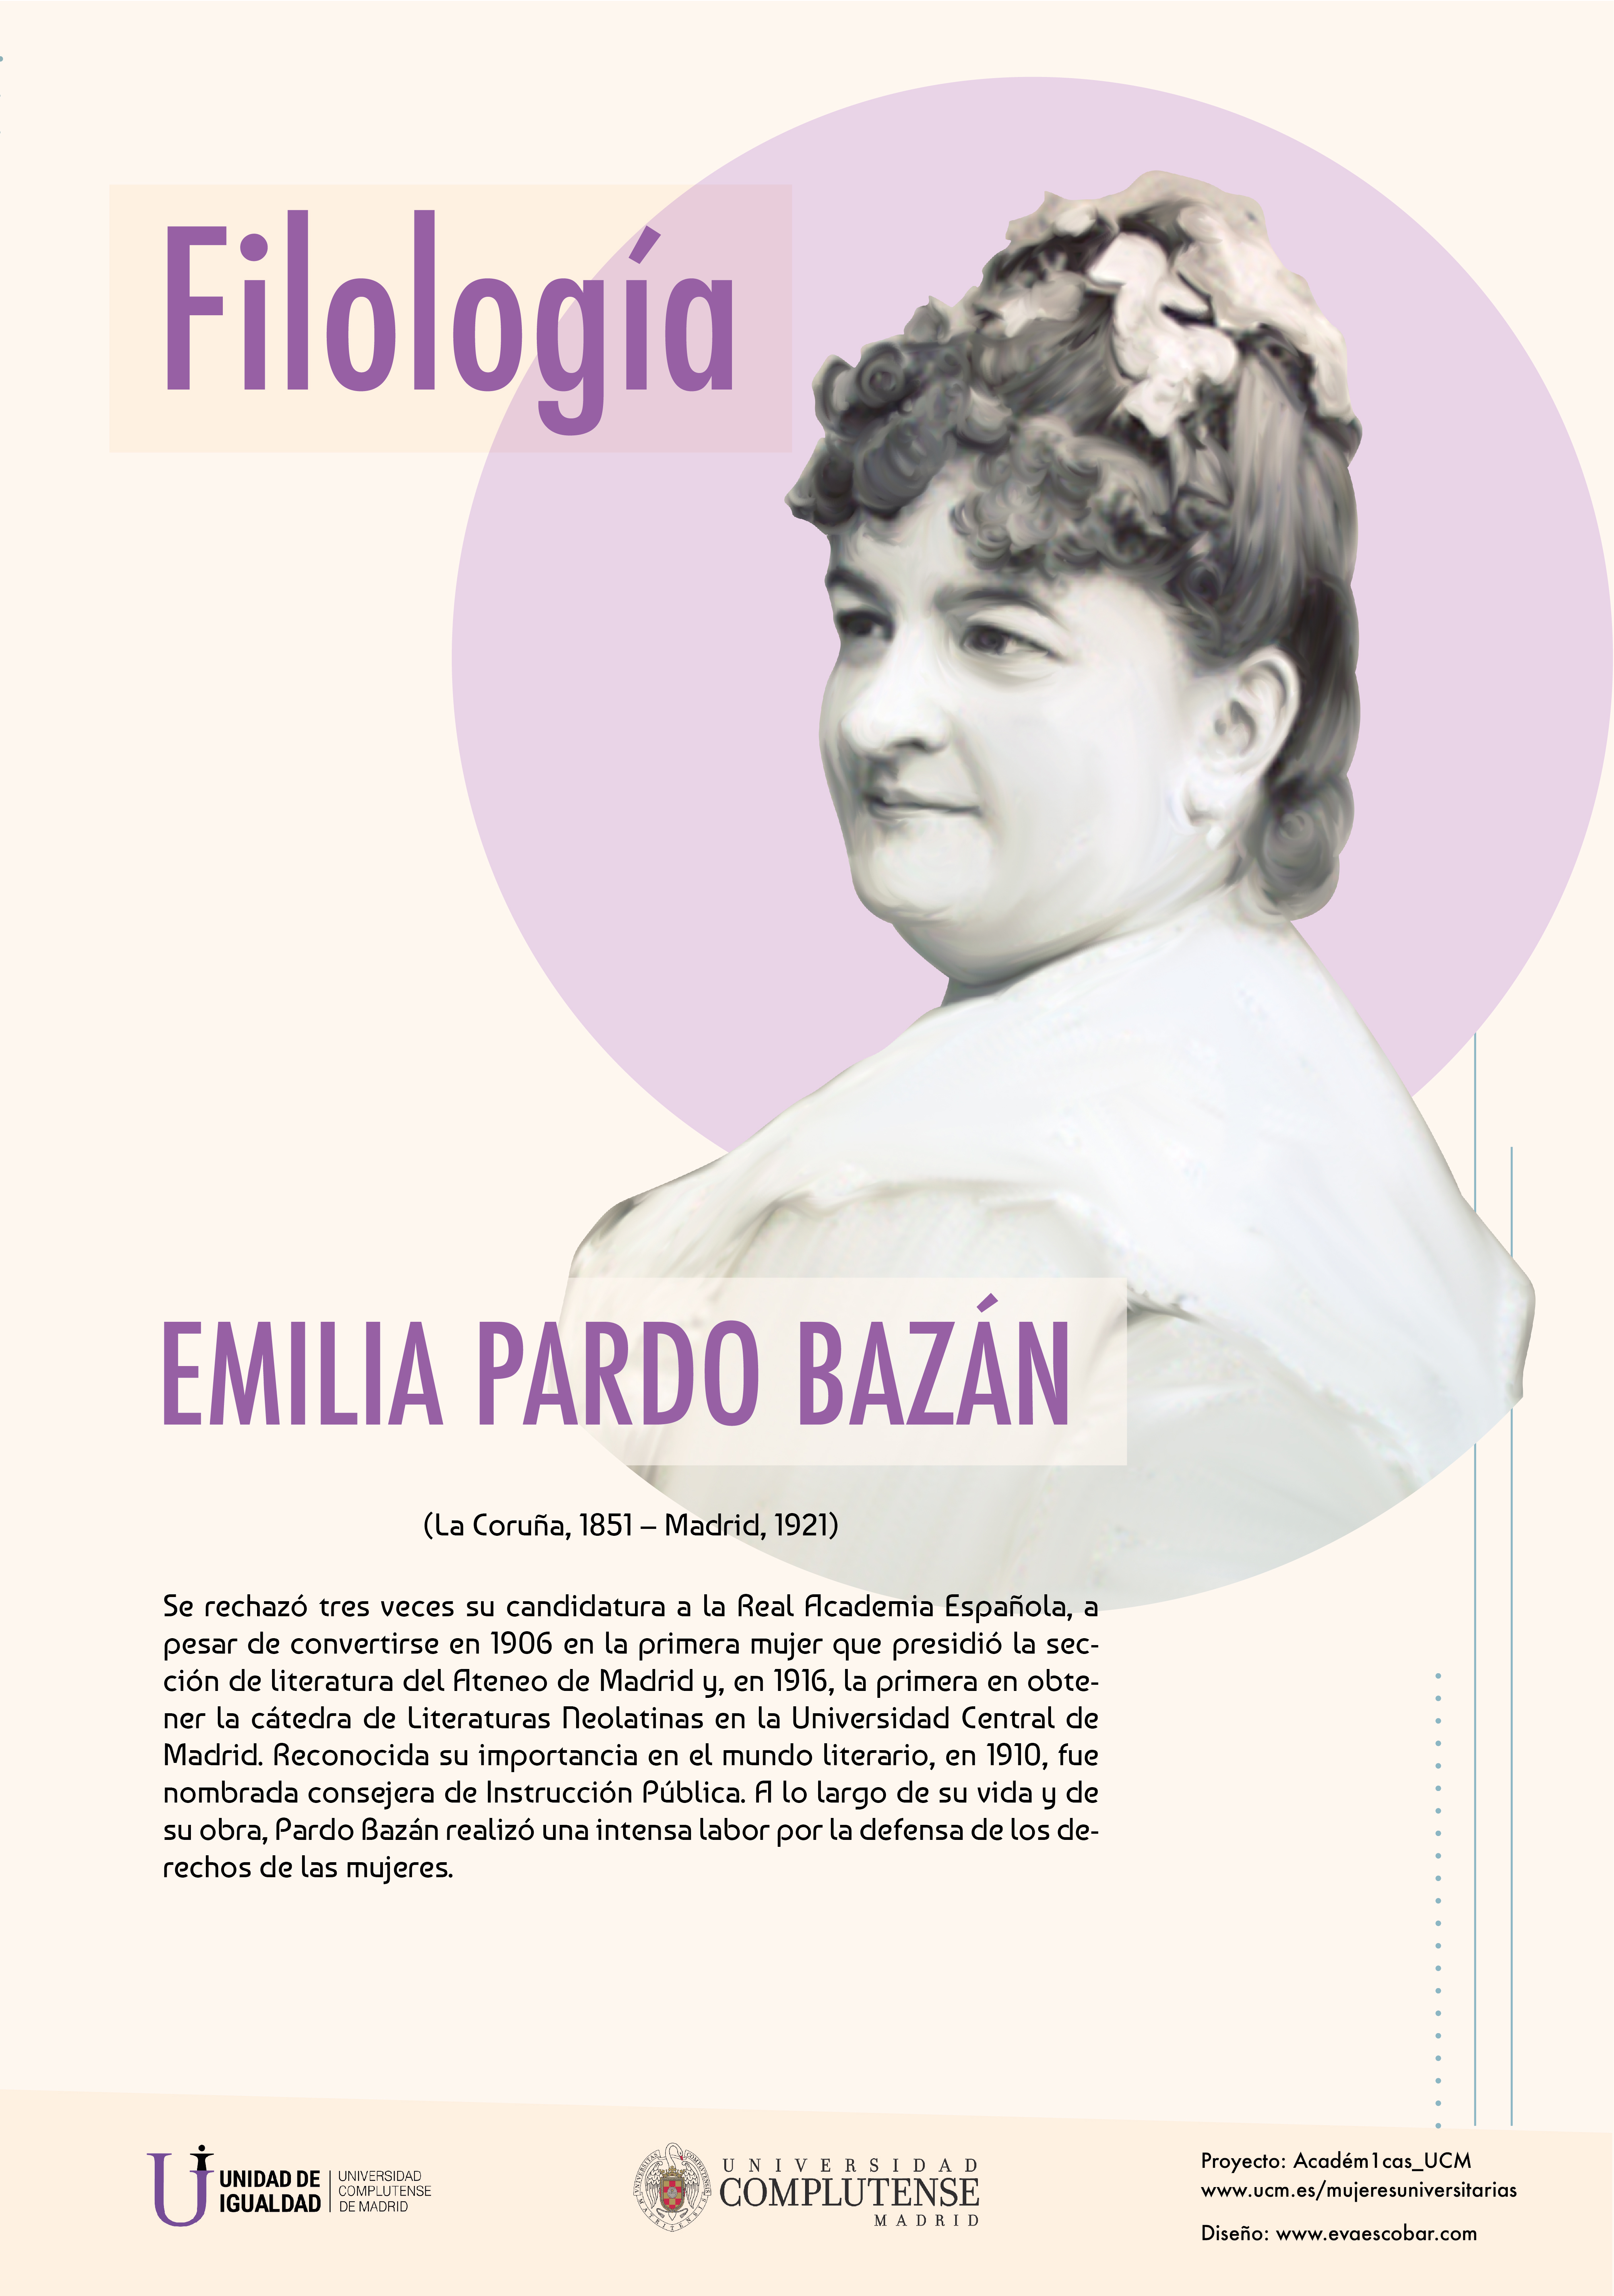 Cartel informativo sobre Emilia Pardo Bazán